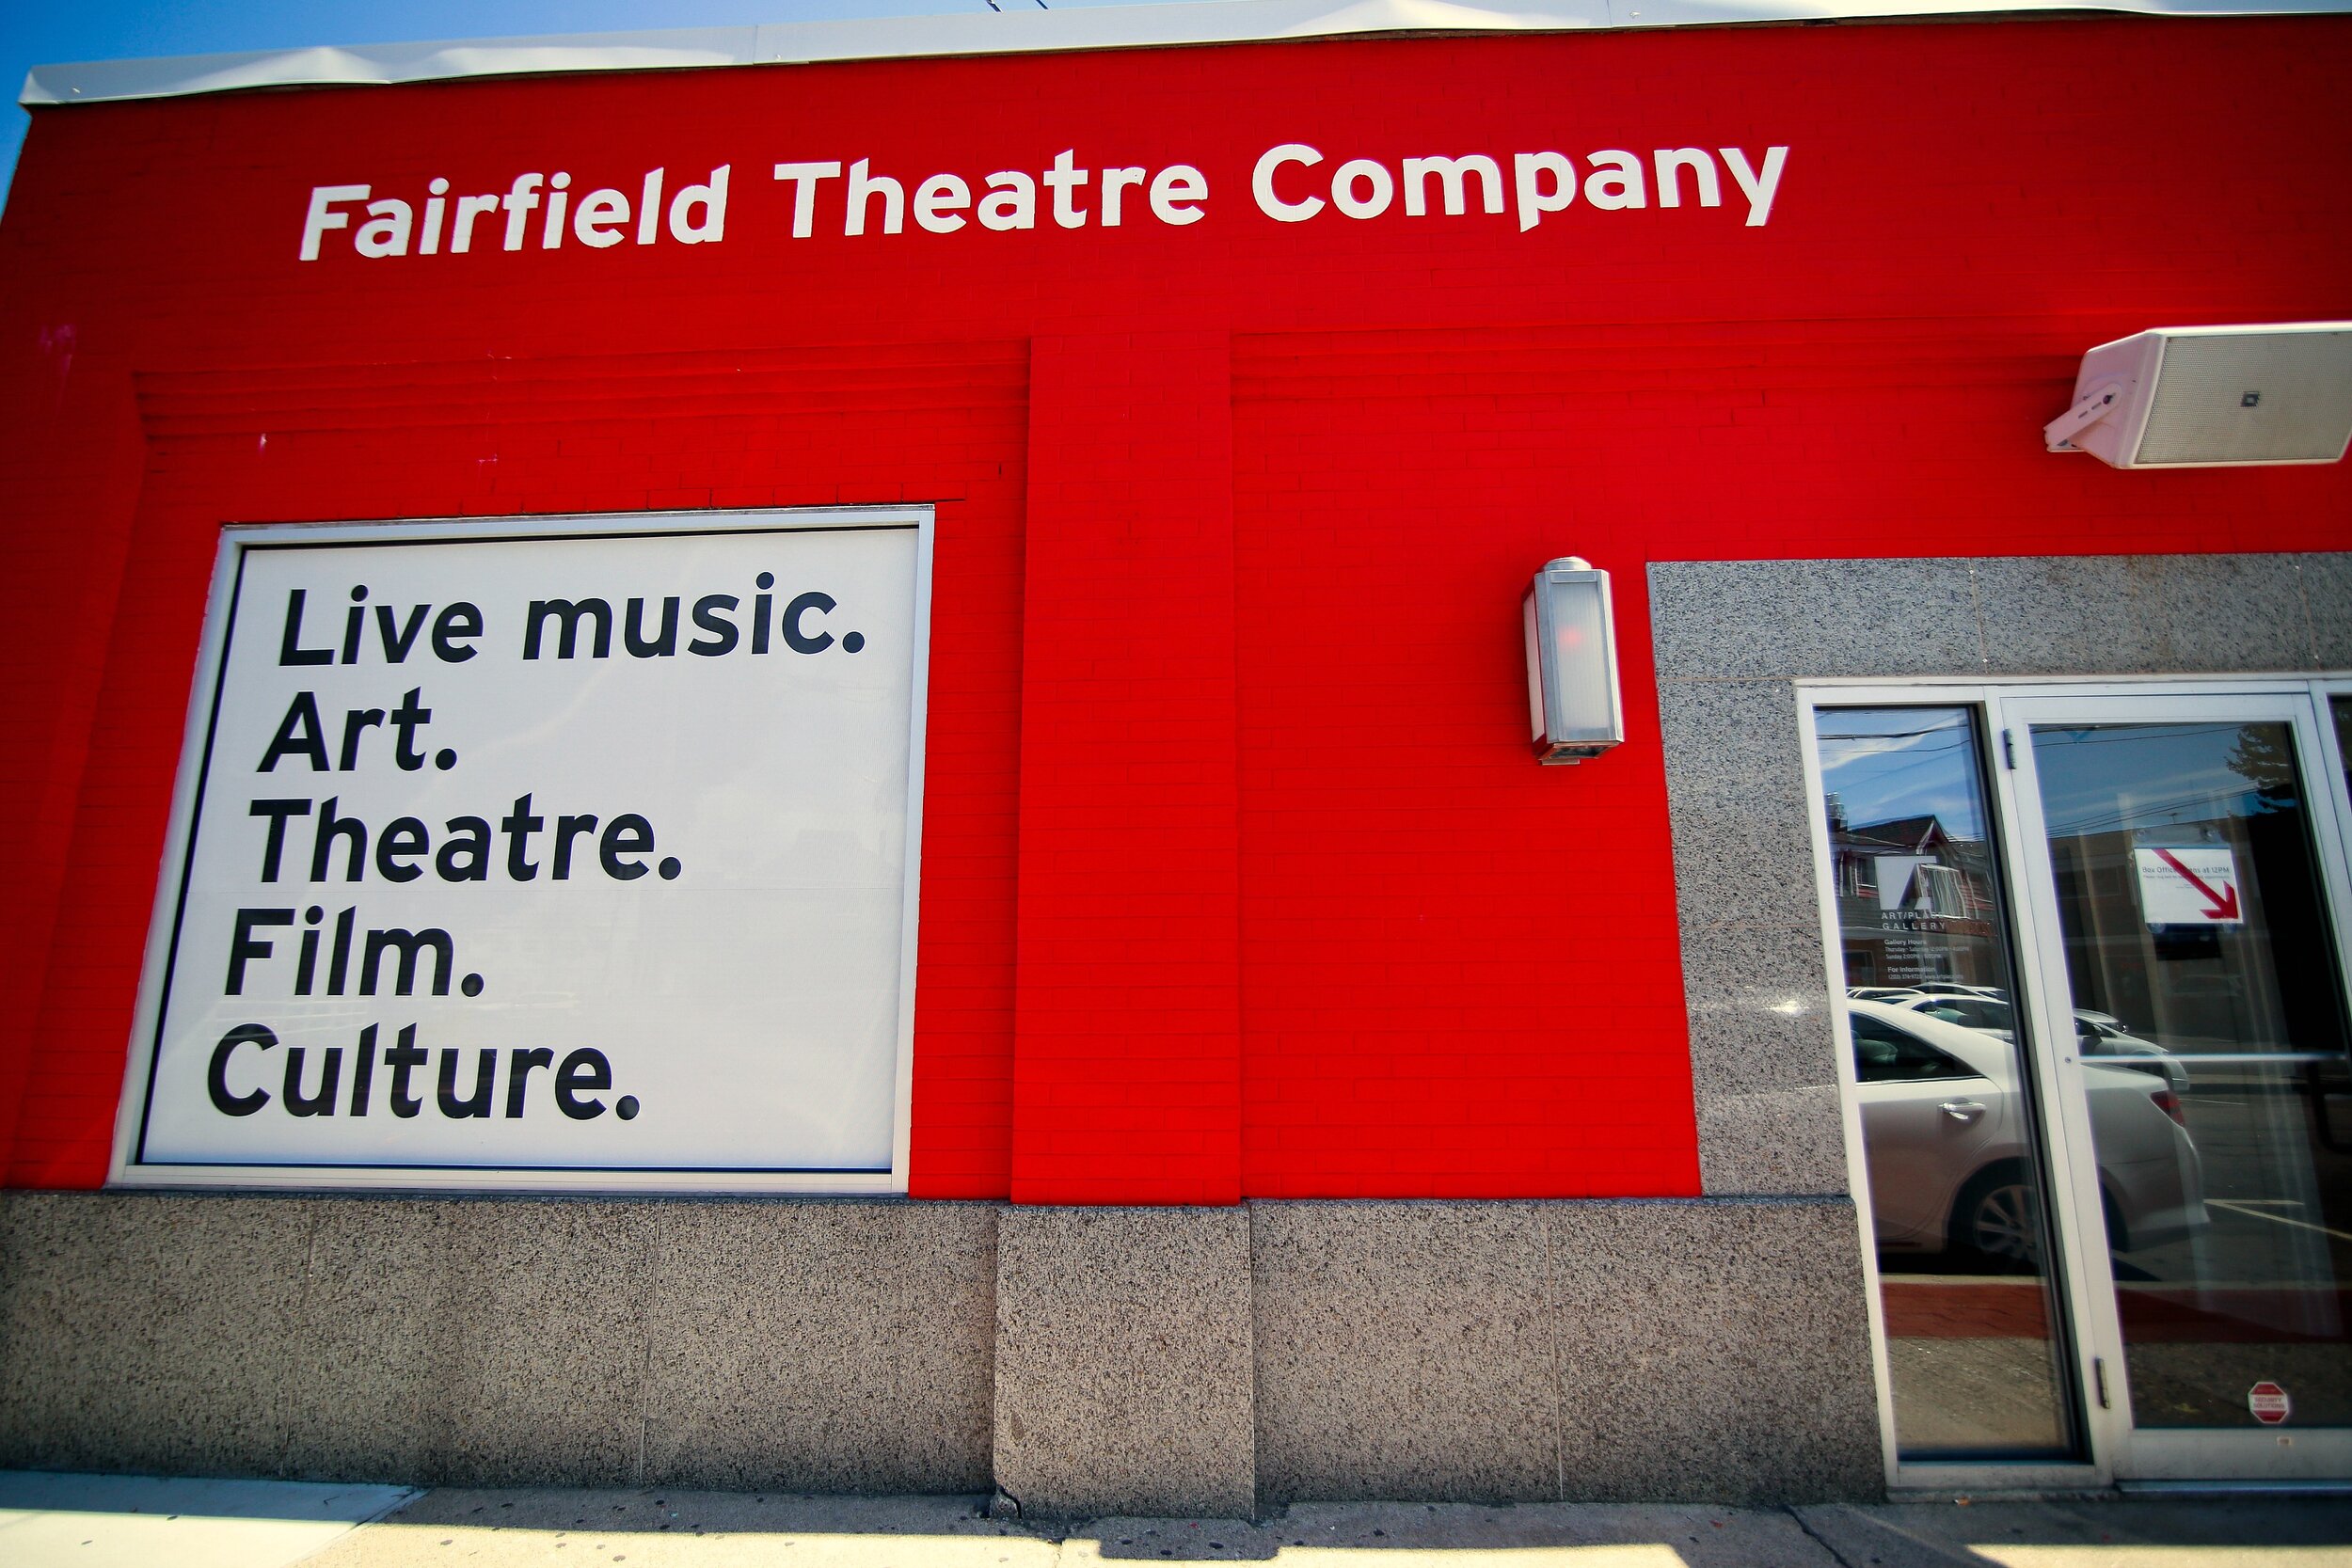 EF_Experience_Fairfield_Fairfield_Theatre_Company.jpg